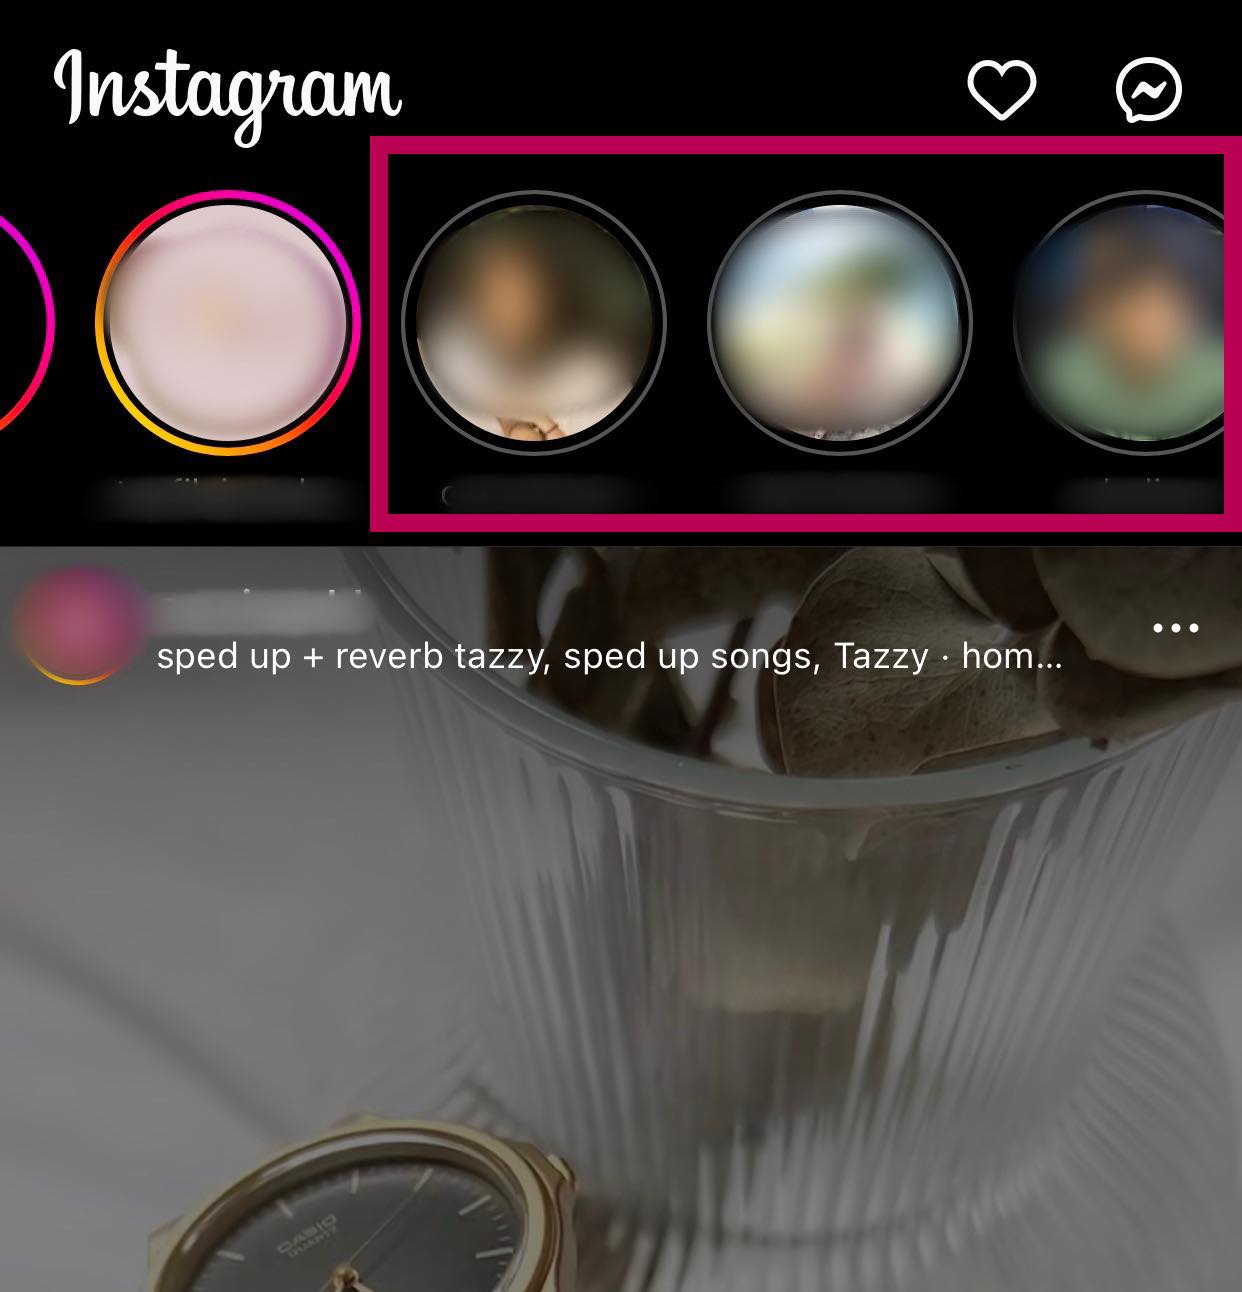 viewed Instagram Stories